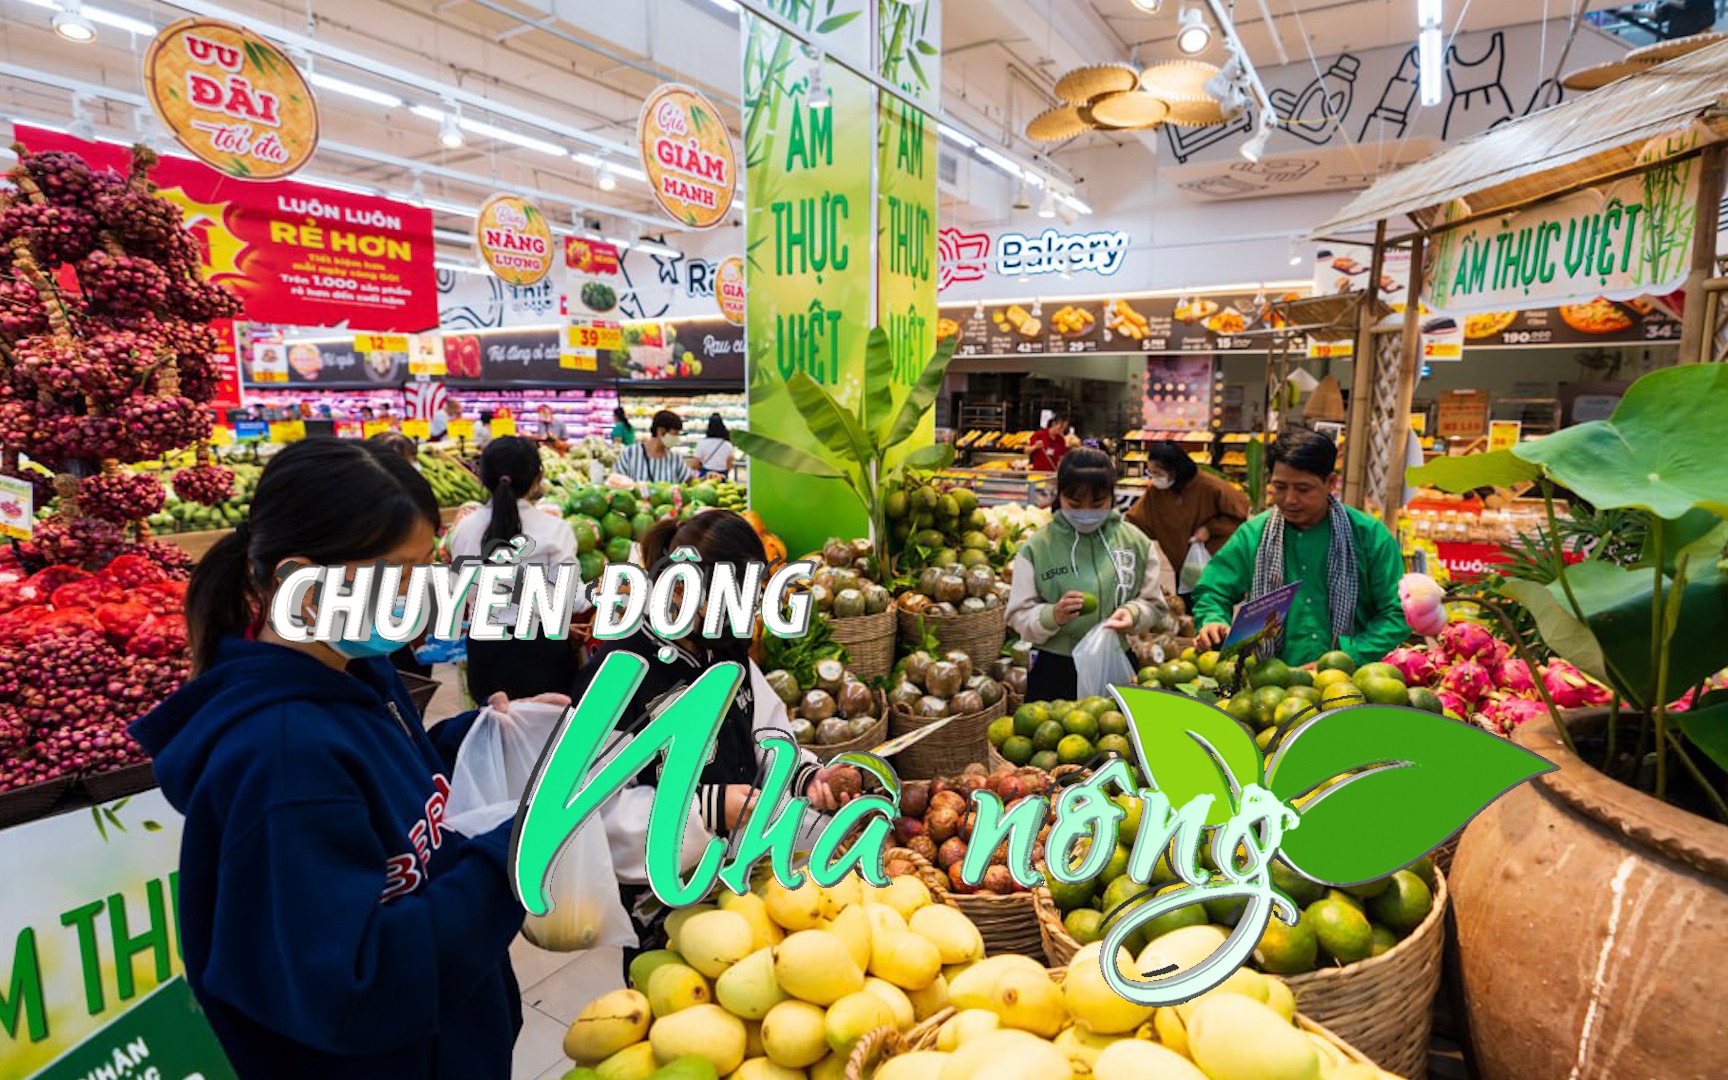 Chuyển động Nhà nông 3/4: Chương trình “Ẩm thực Việt” quảng bá 20 đặc sản vùng miền